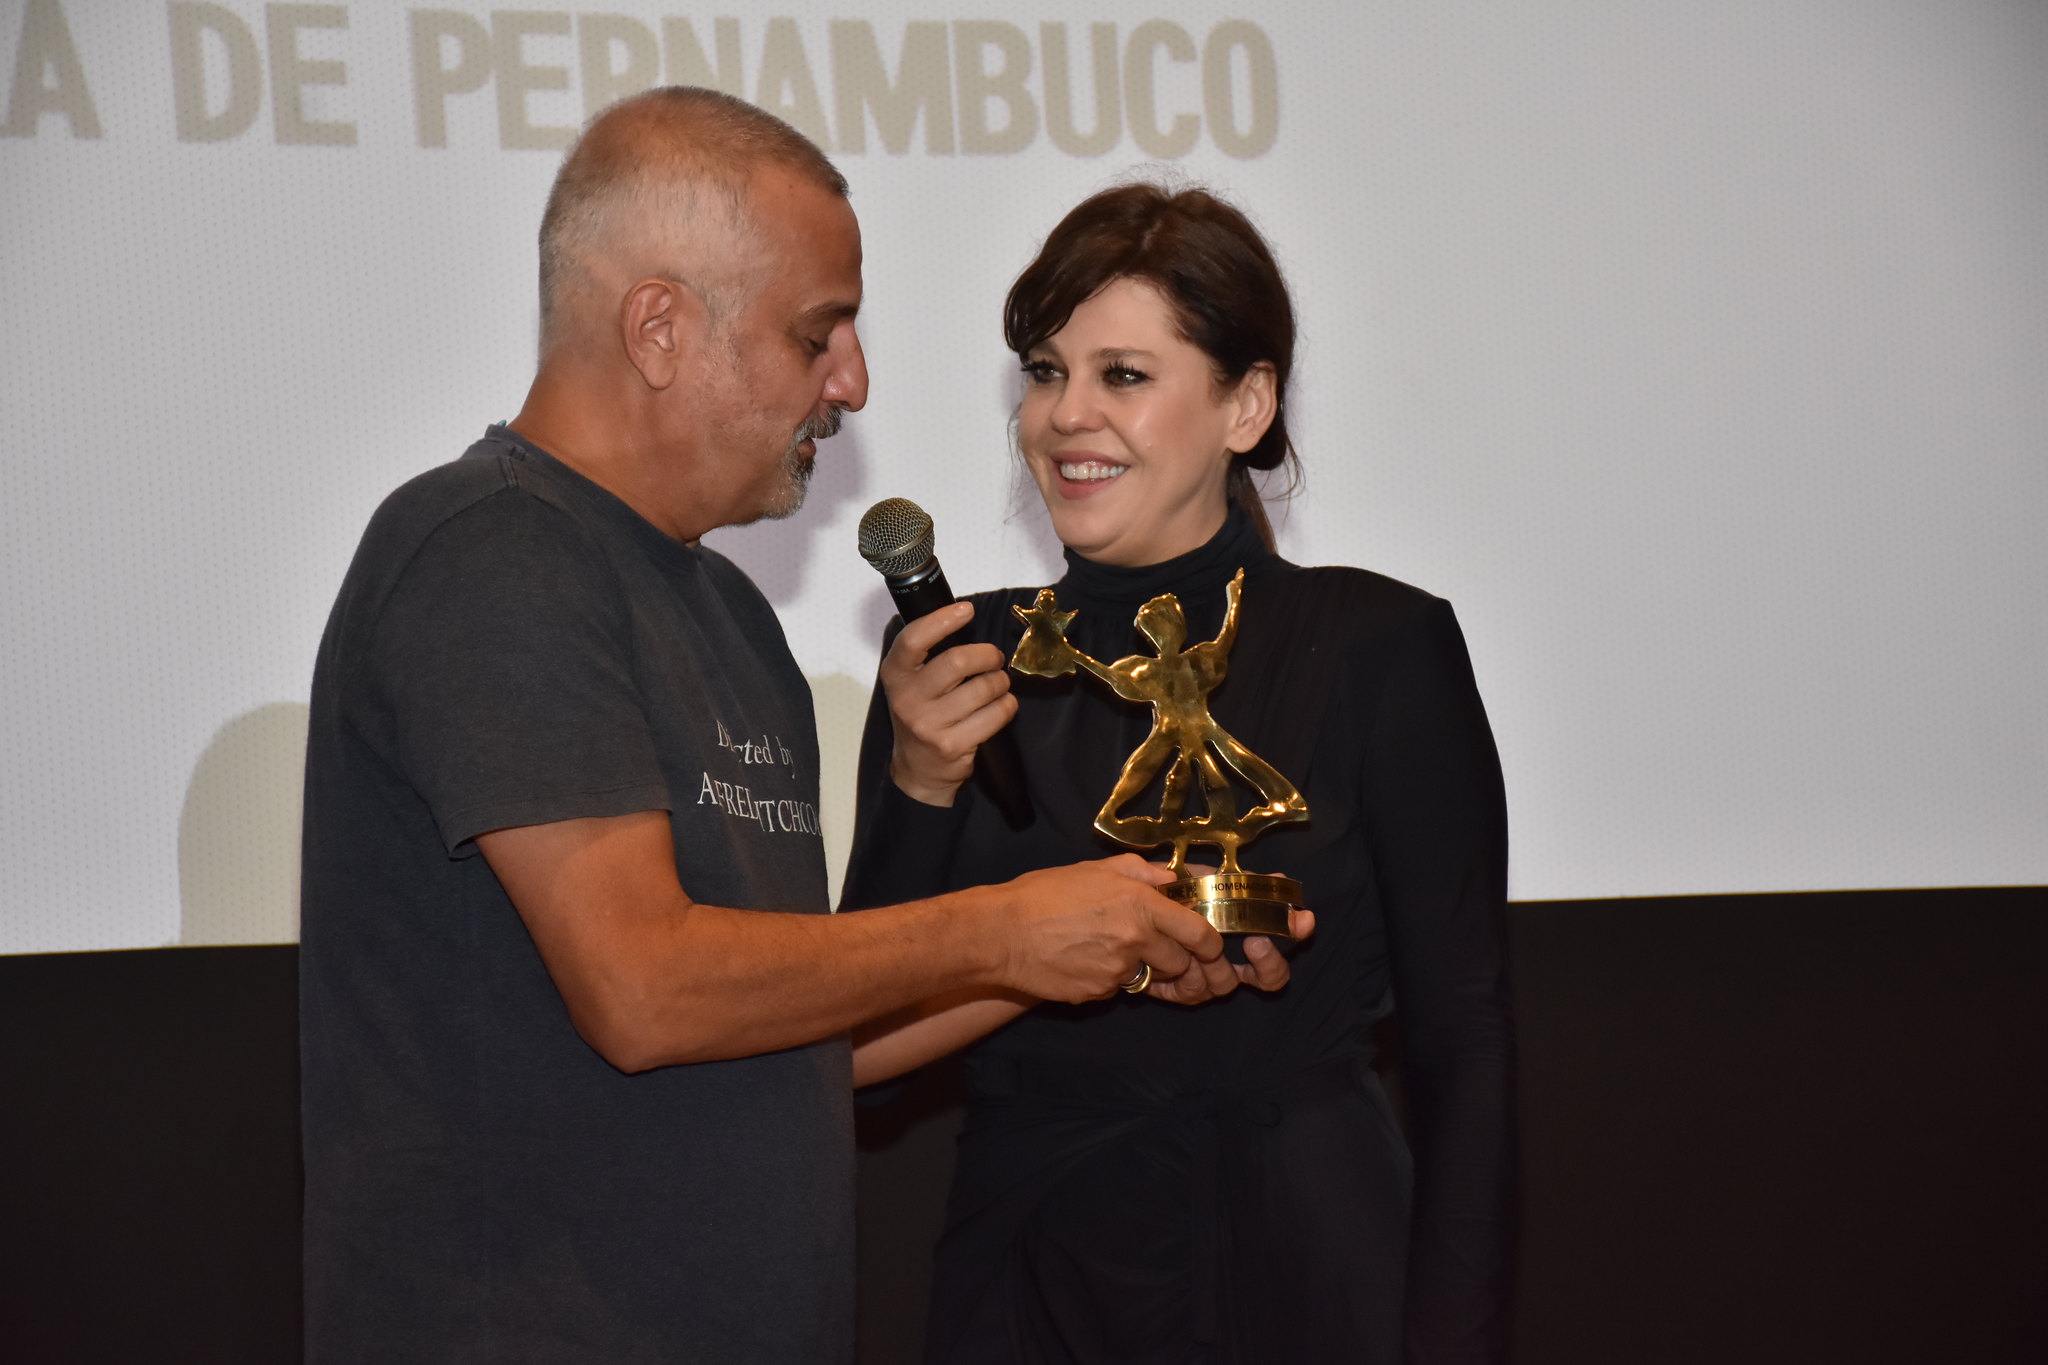 No Cine PE, Bárbara Paz recebe homenagem das mãos de Lírio Ferreira